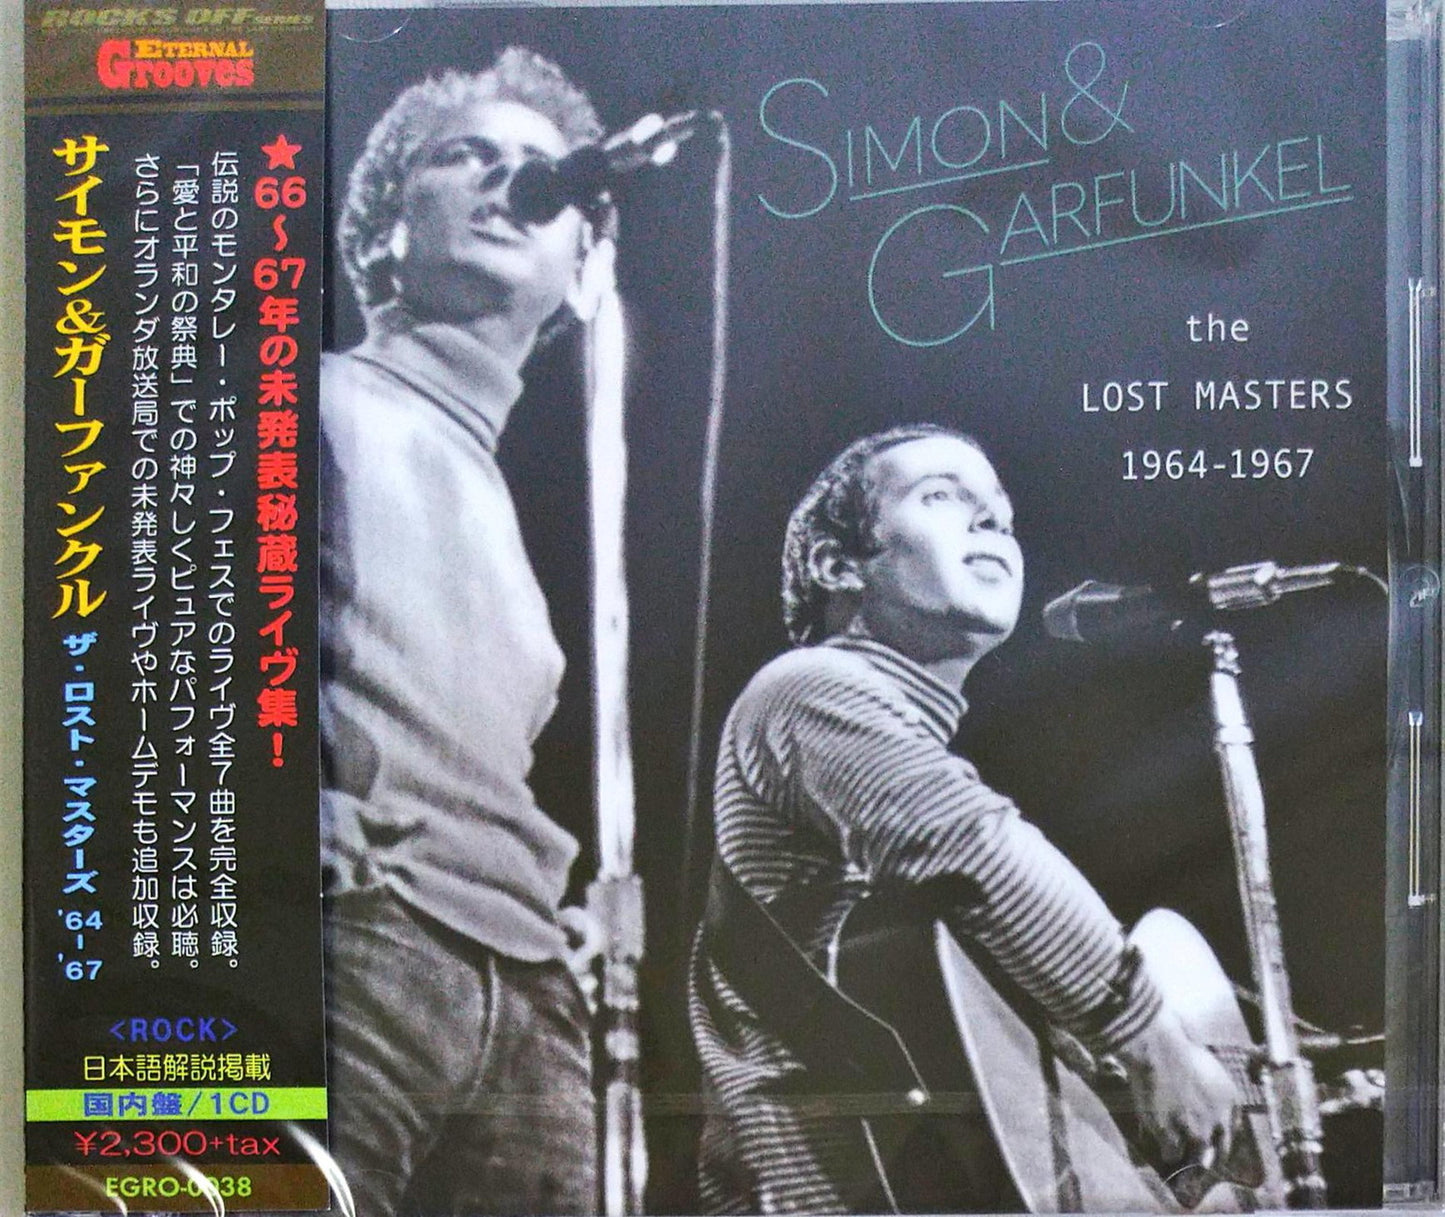 Simon & Garfunkel - The Lost Masters 1964-1967 - Japan CD